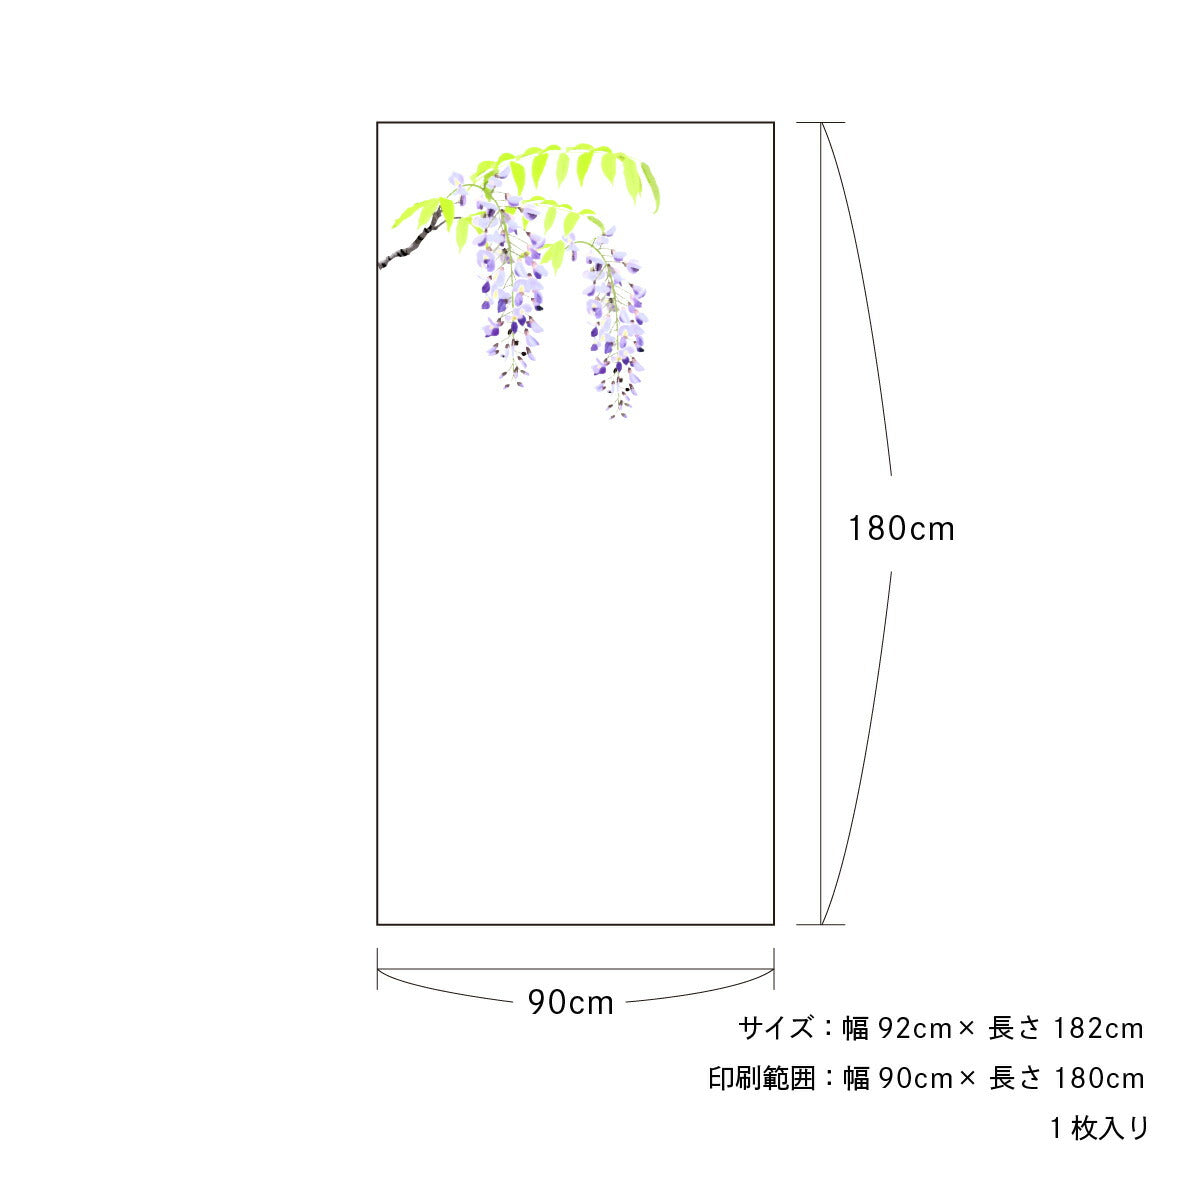 四季の草花ふすま紙 藤 FL_06F 水で貼るタイプ 幅90cm×長さ180cm 1枚入り 襖紙 アサヒペン